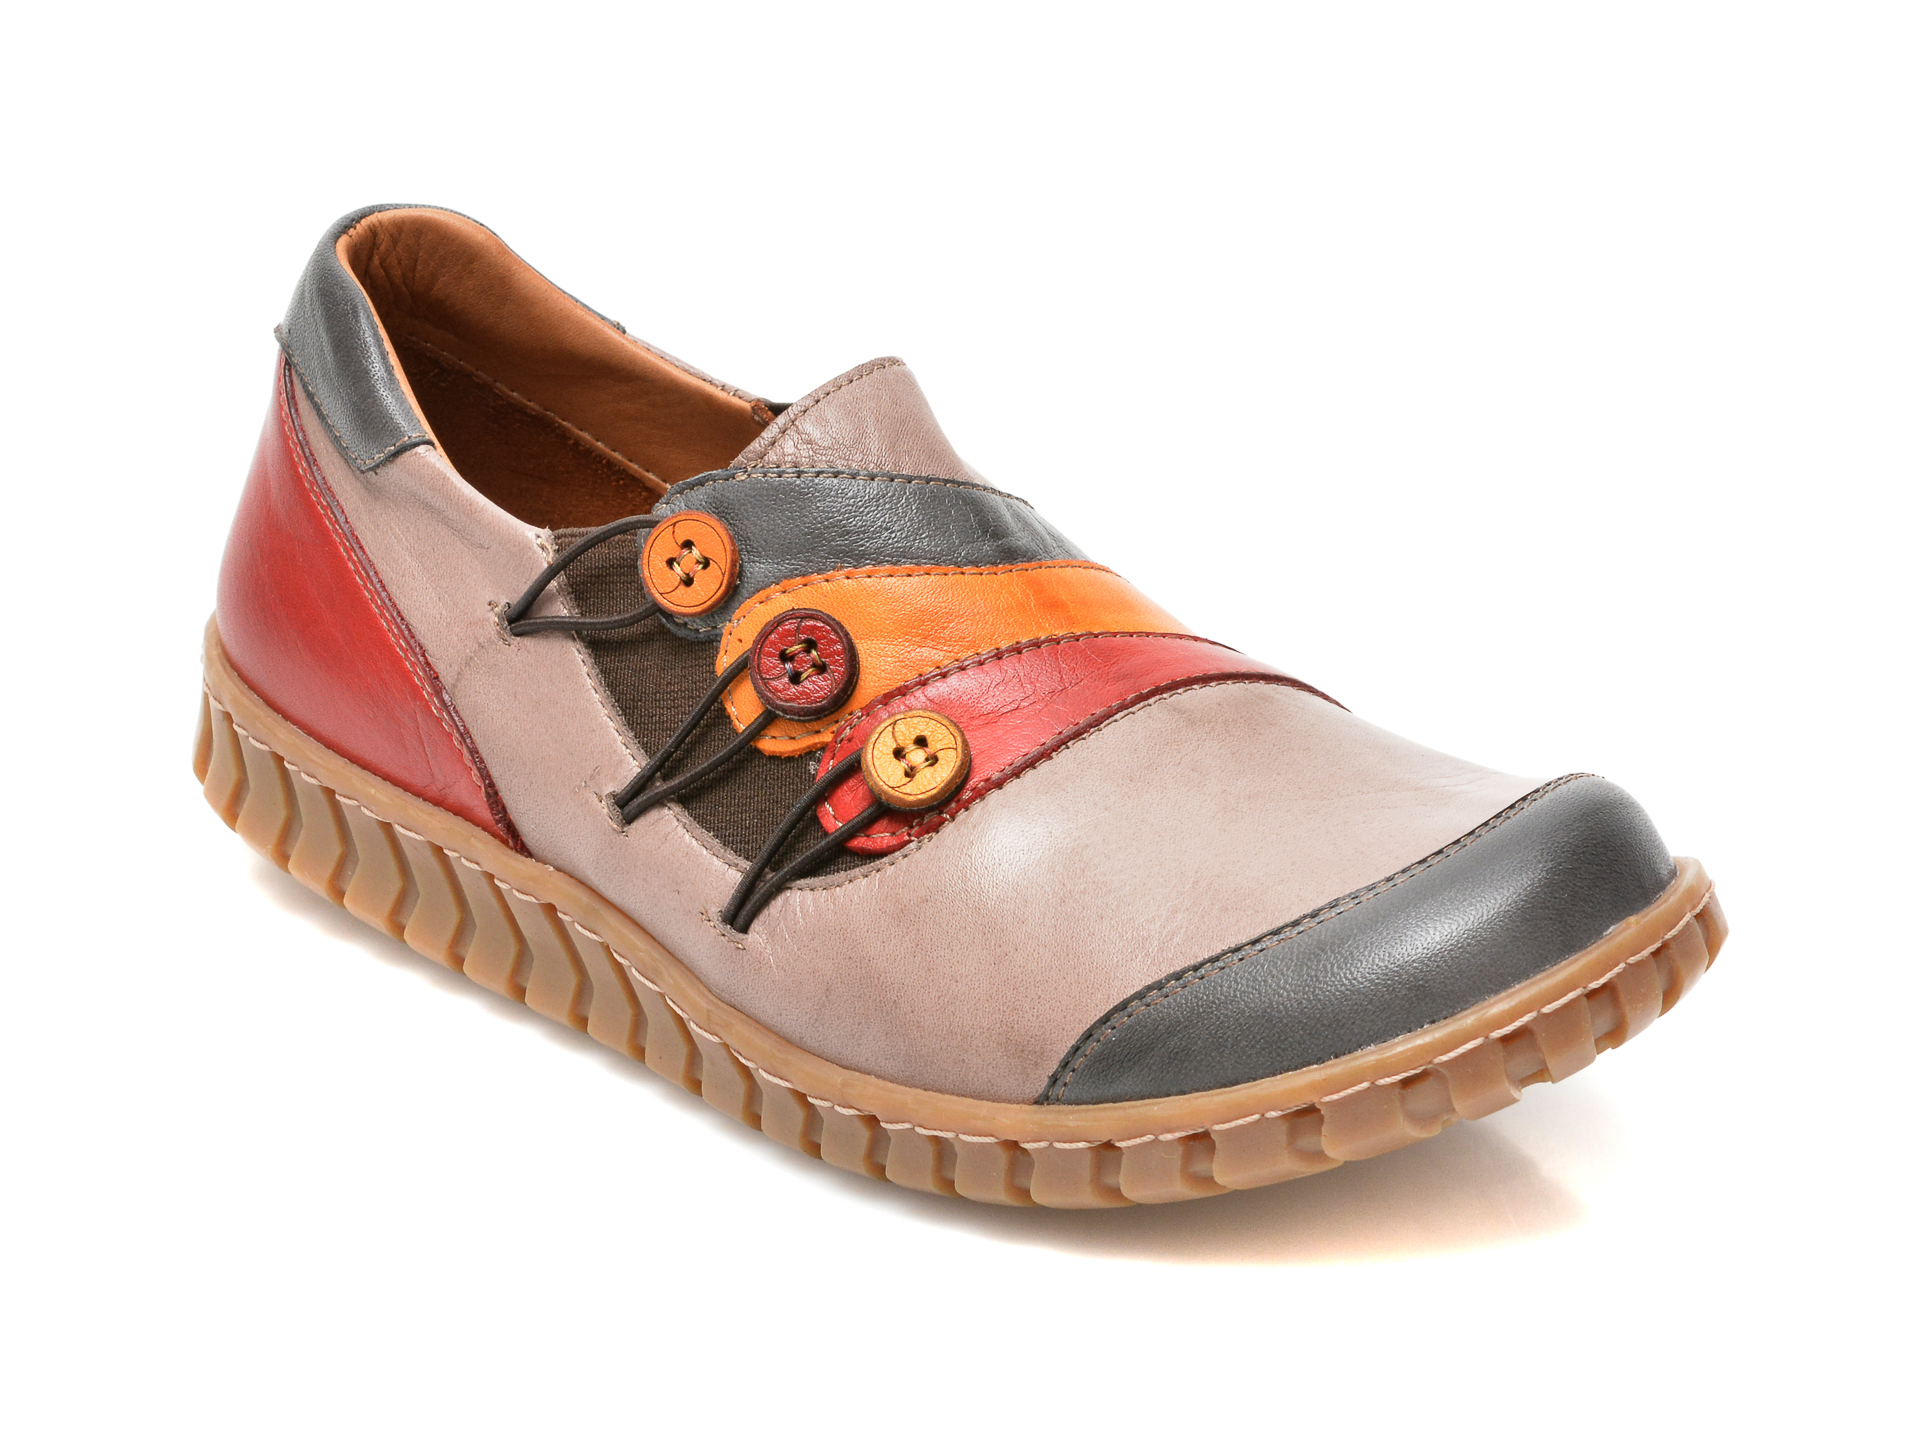 Pantofi FLAVIA PASSINI multicolori, 3062, din piele naturala Flavia Passini